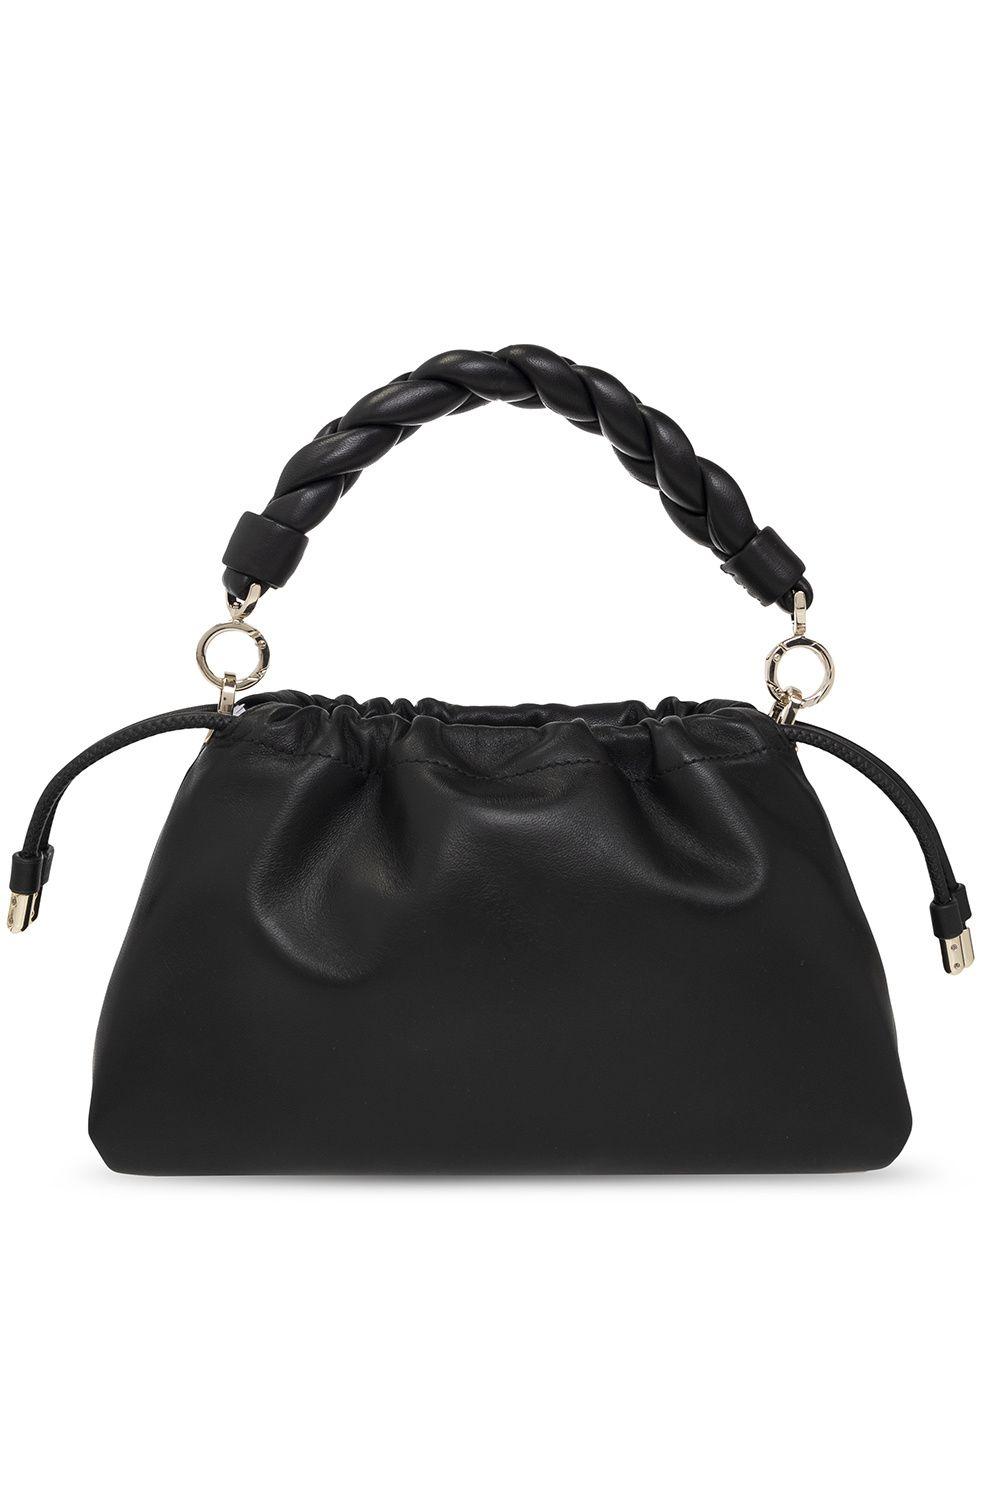 Kate Spade New York Meringue Large Shoulder Bag - Black